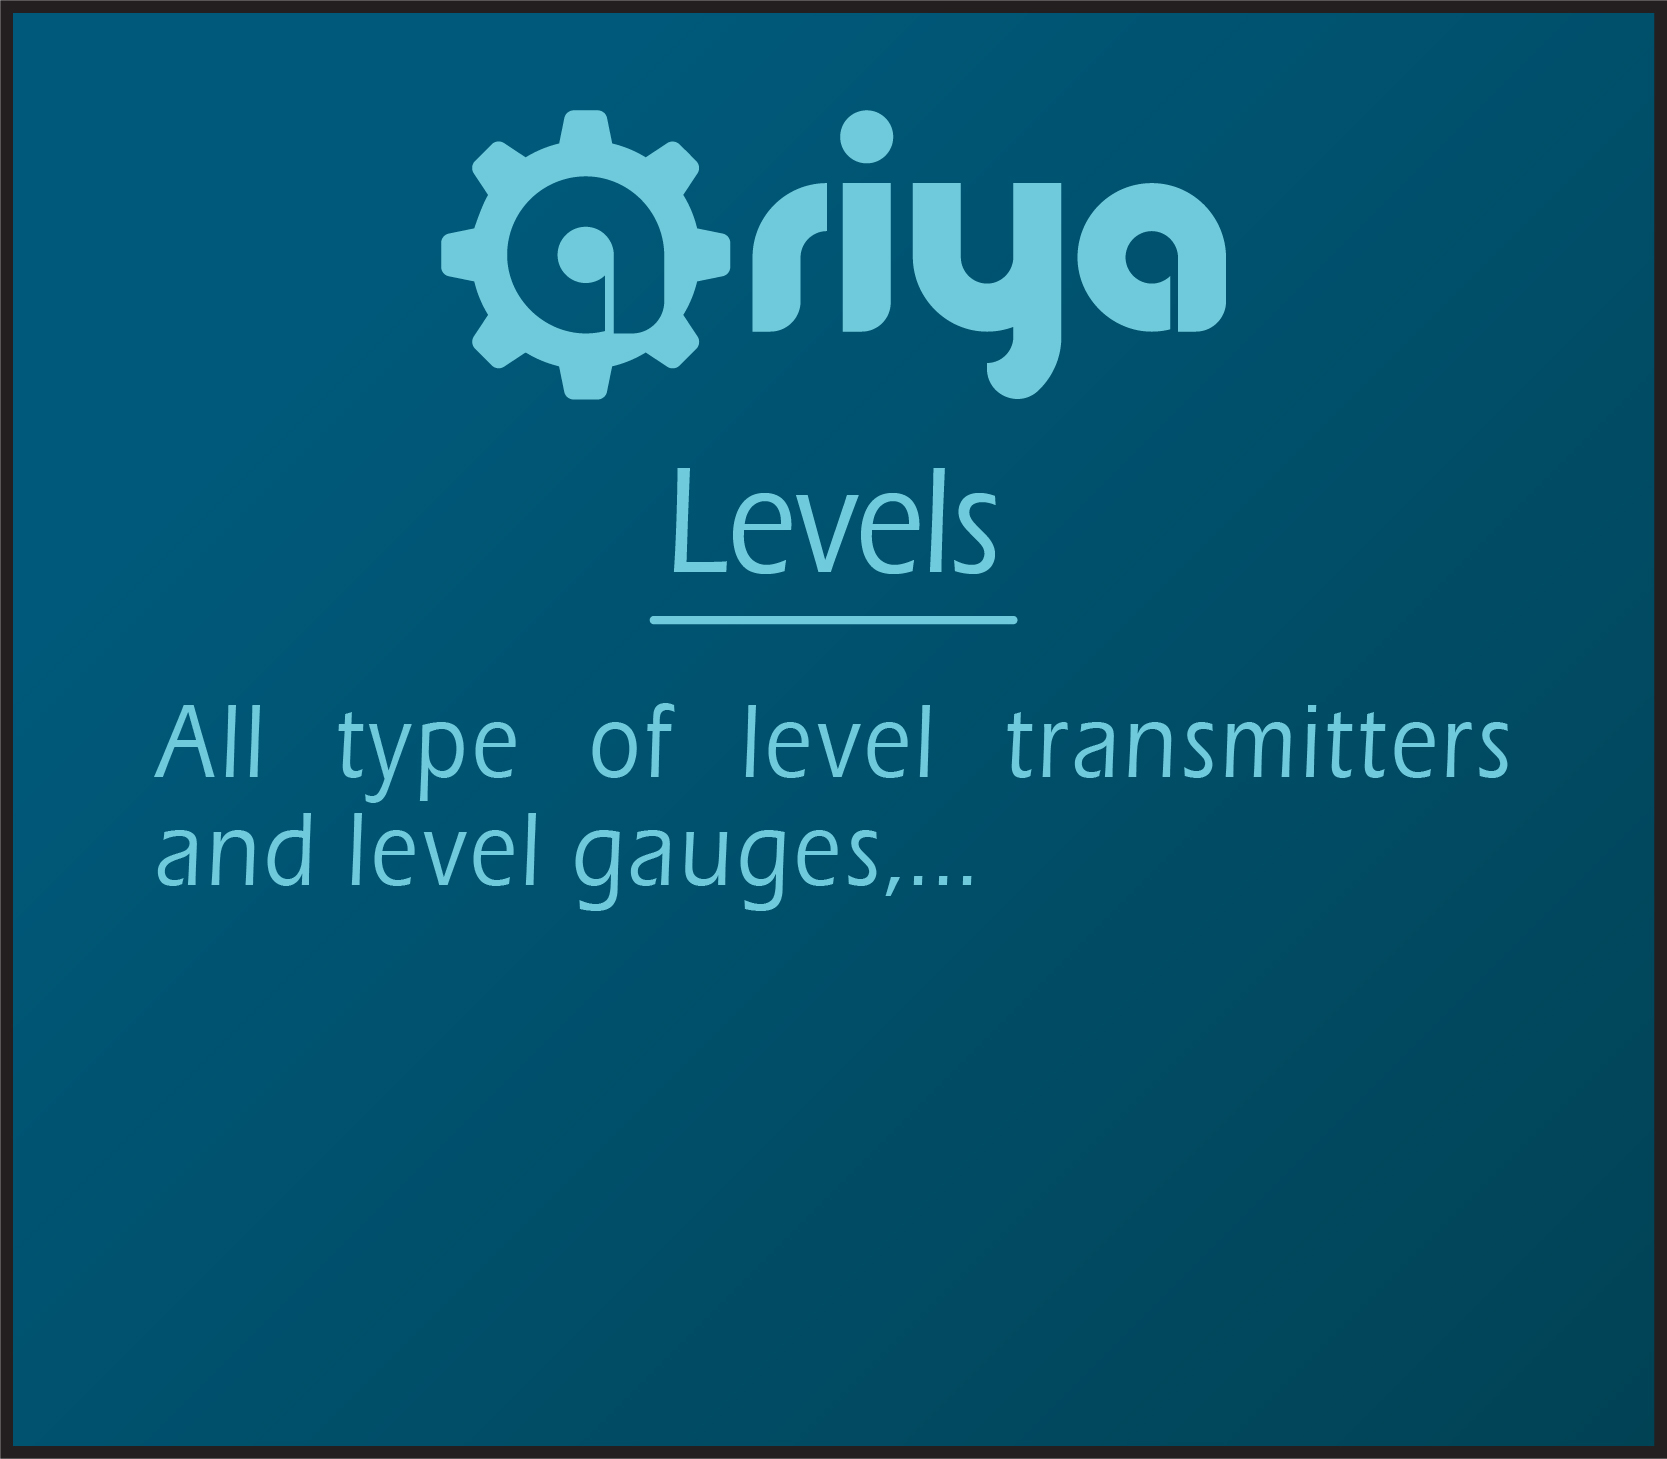 Levels-Ariya-instrument-base